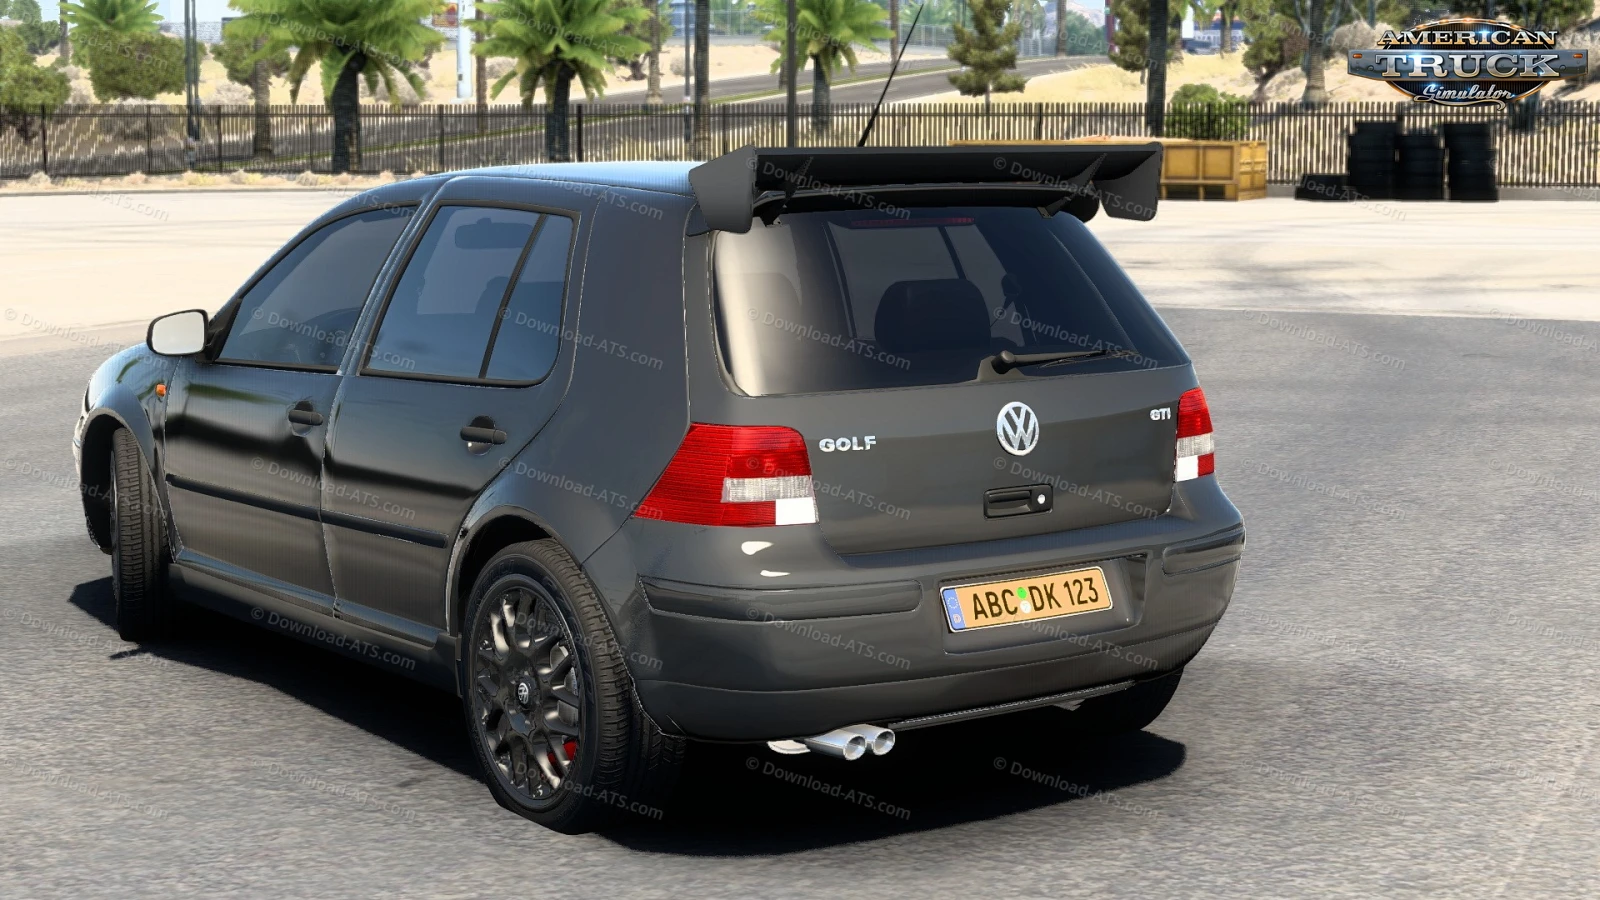 Volkswagen Golf Mk4 + Interior v1.0 (1.47.x) for ATS